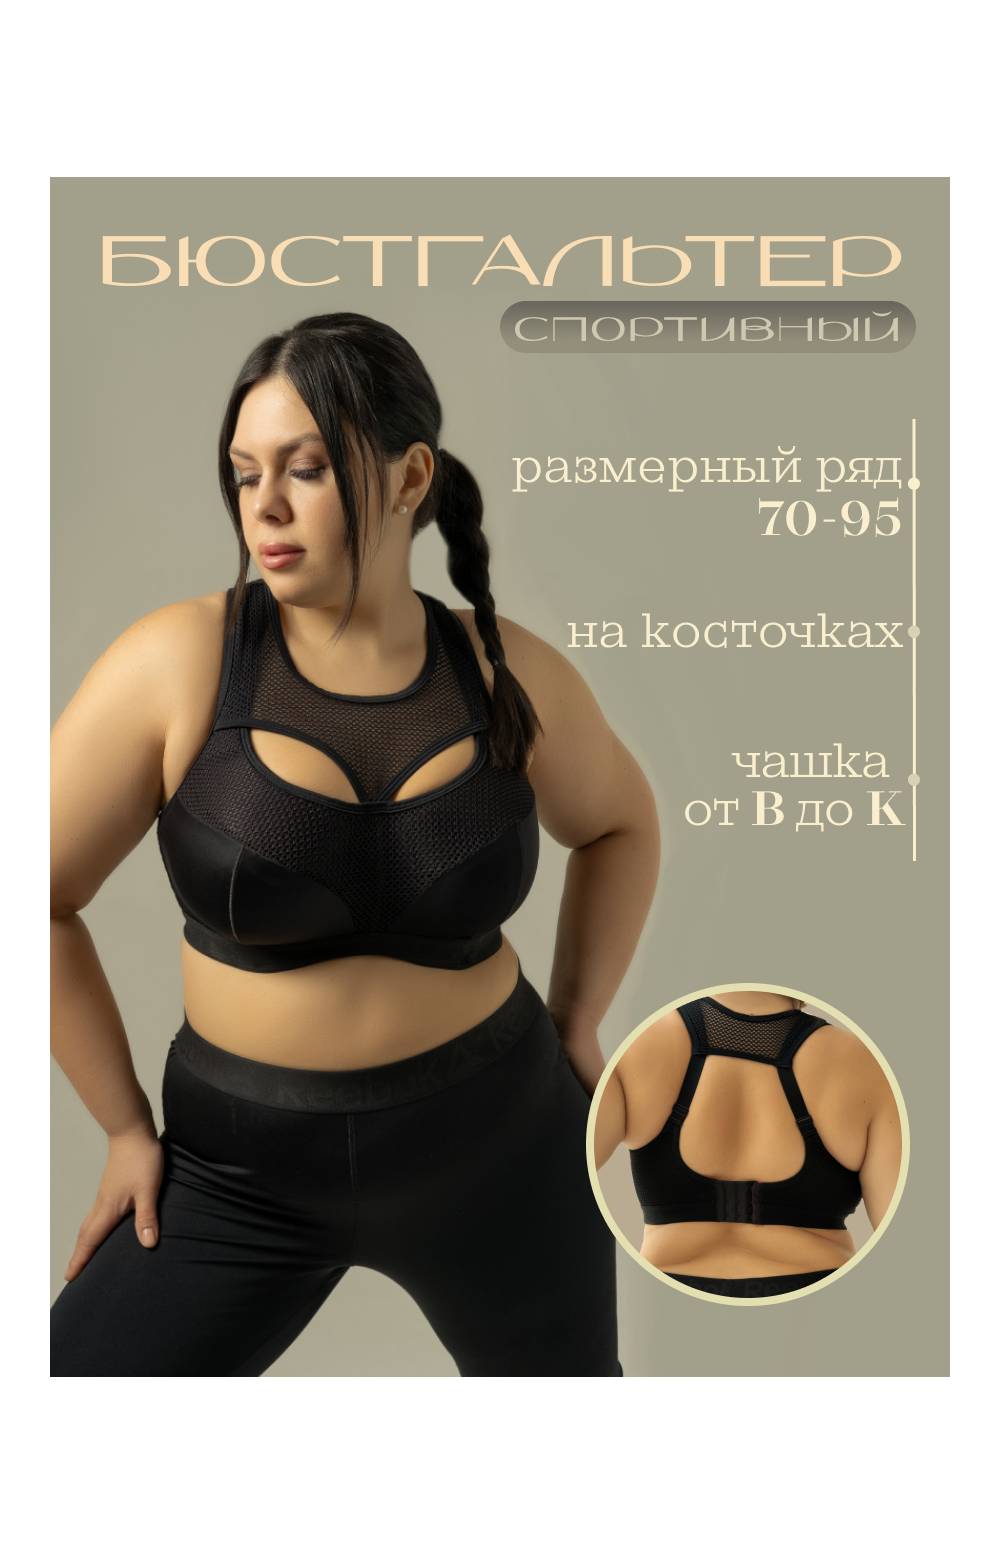 Бюстгальтер спортивный Astratex 9052 на косточках (Черный) - купить в интернет-магазине «Русский Размер»